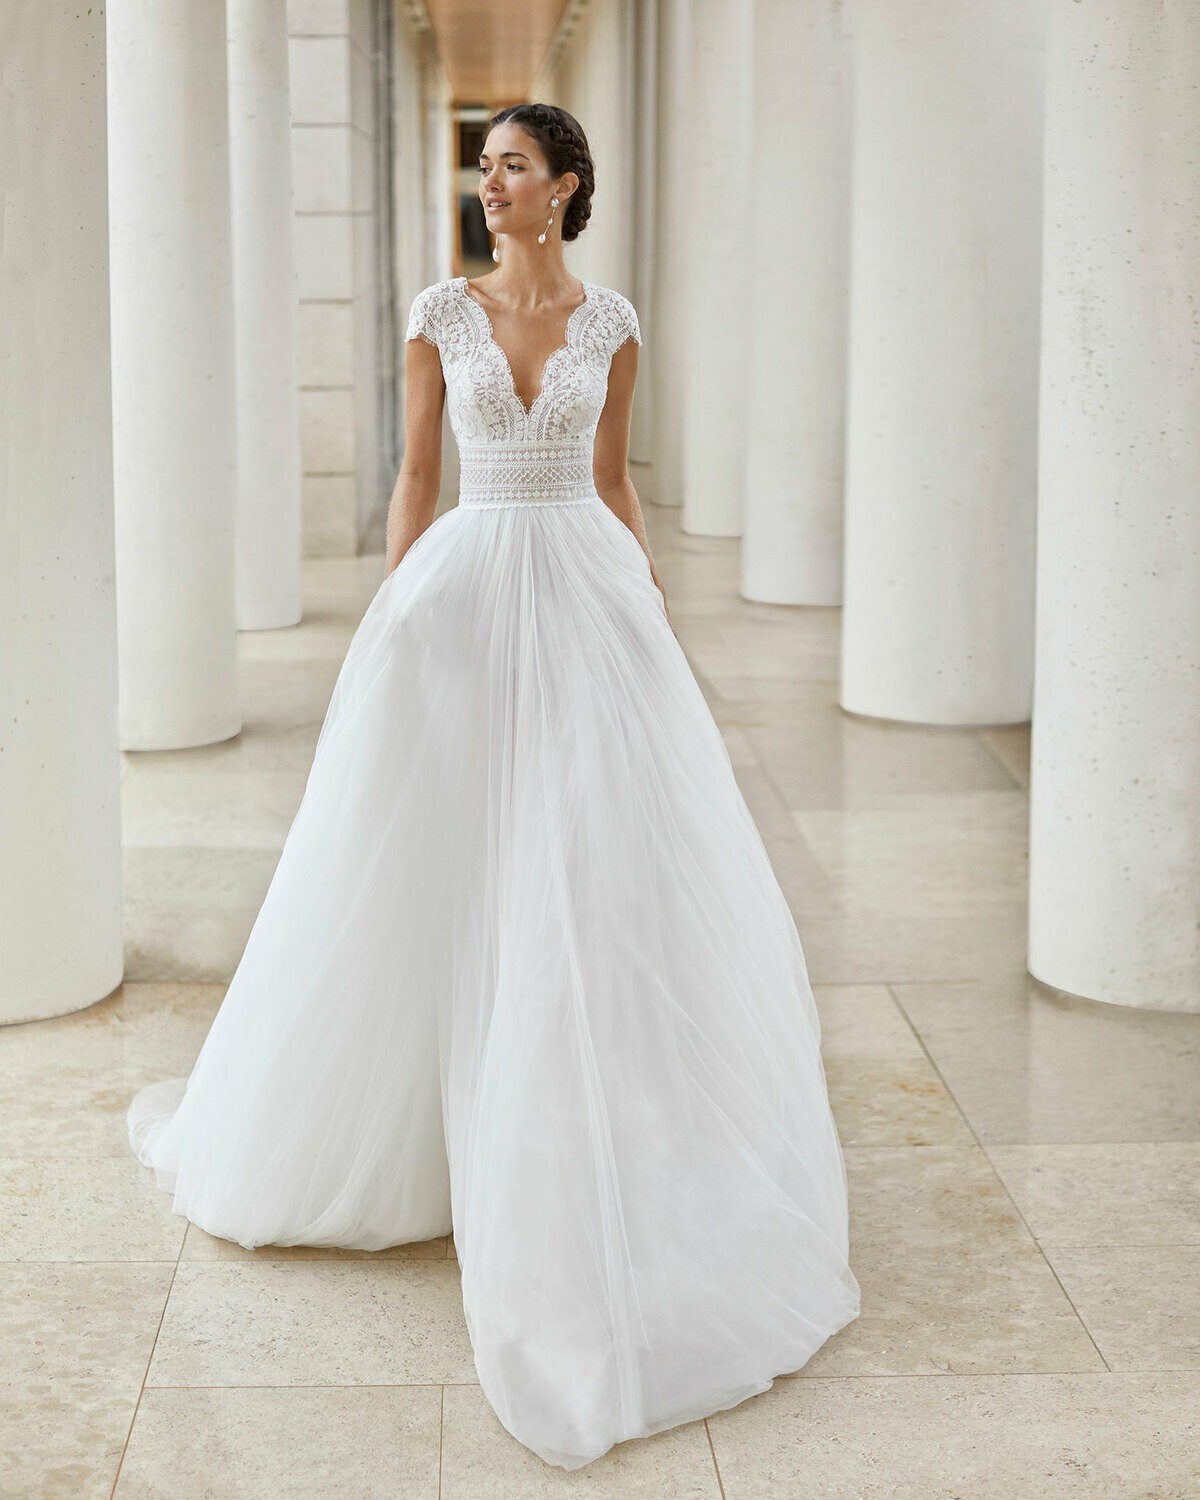 SAUCA - abito da sposa collezione 2020 - Rosa Clarà Couture